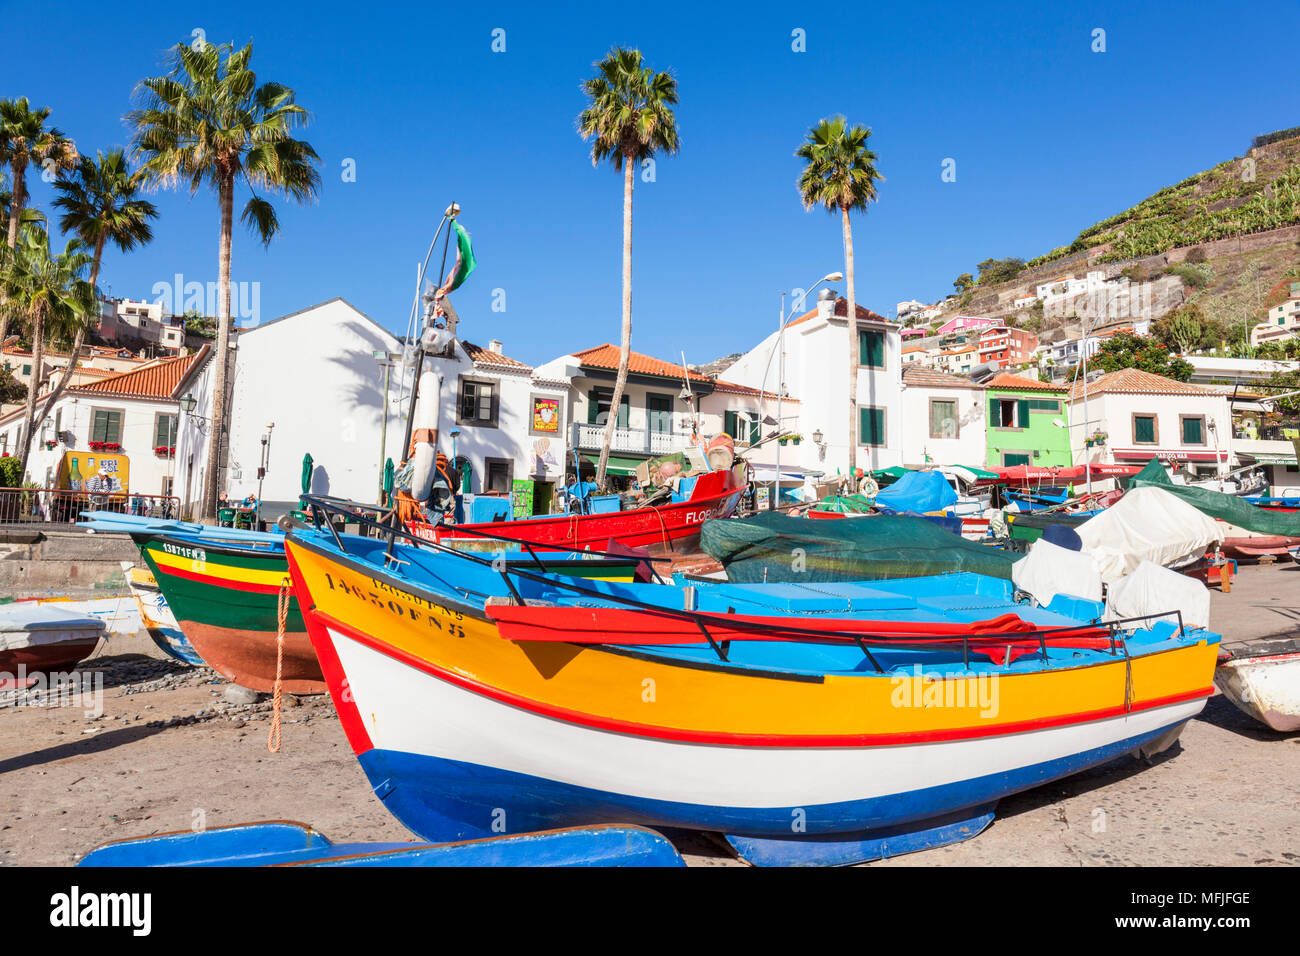 Les bateaux de pêche colorés sur la plage de Camara de Lobos, village de pêcheurs de l'Atlantique, Madère, Portugal, Europe Banque D'Images